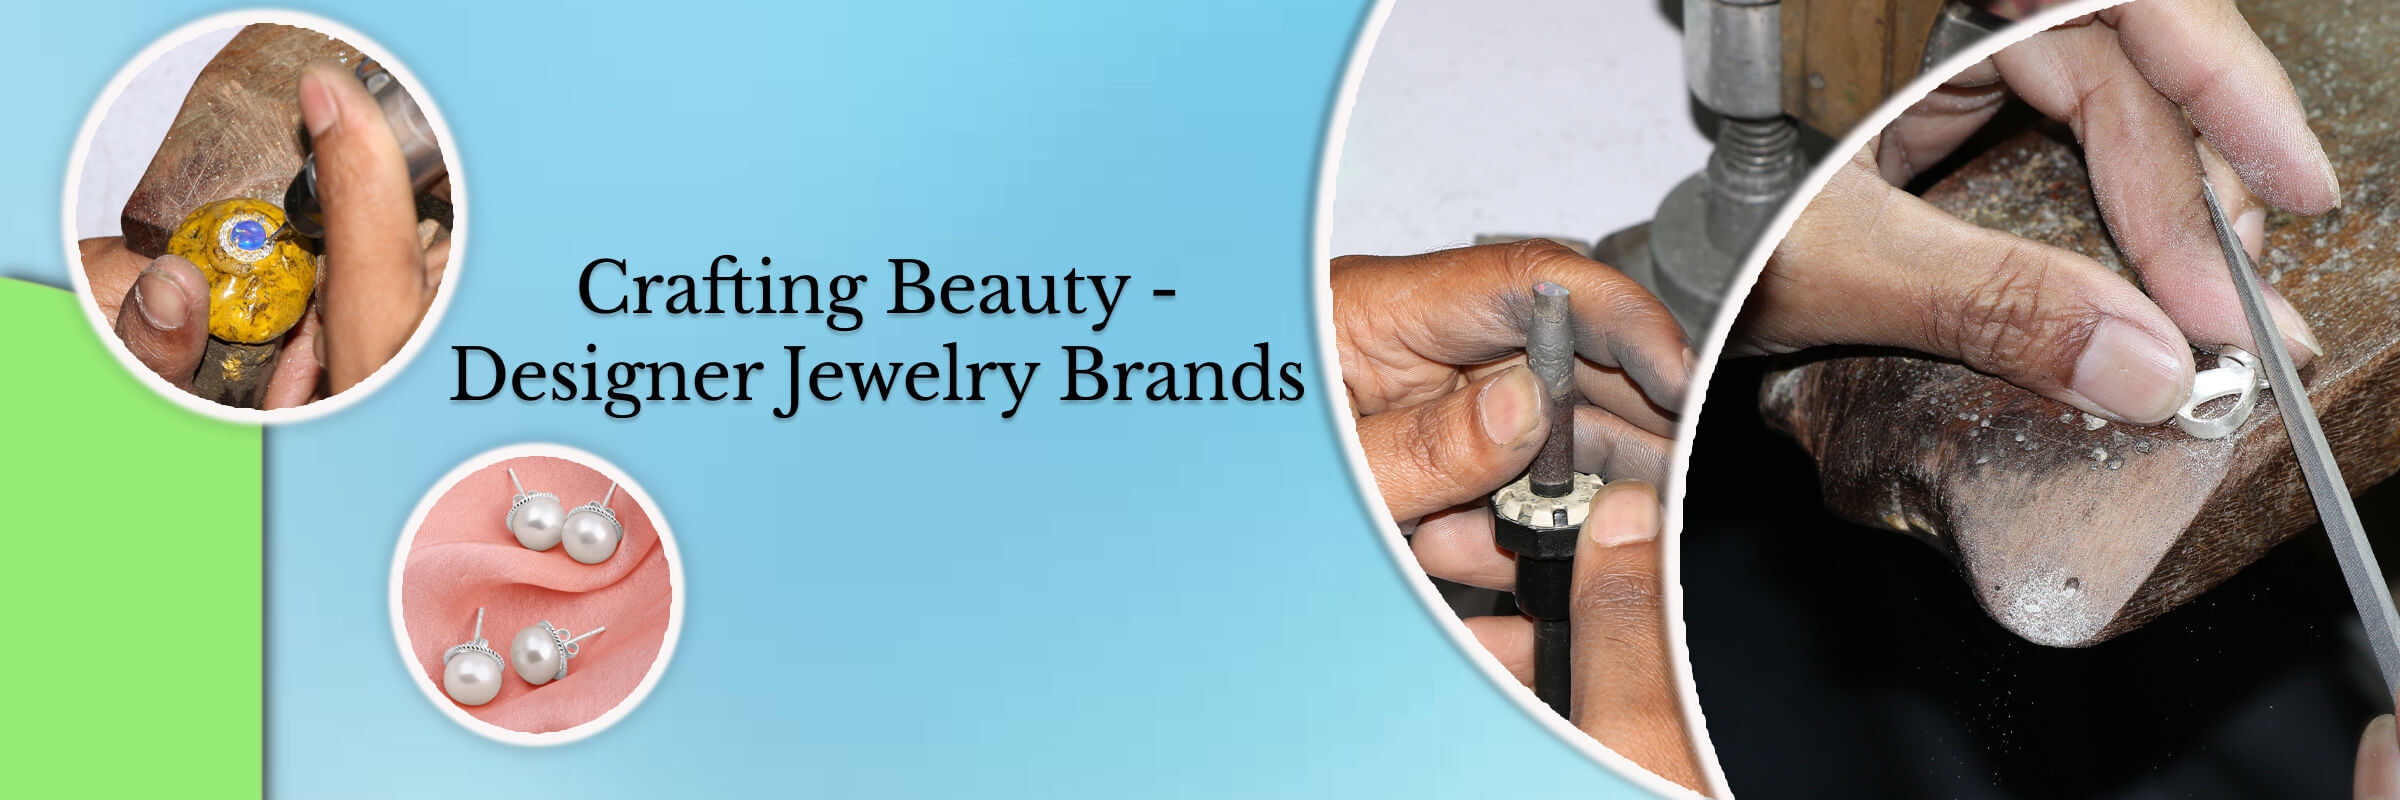 Designer Jewelry Brands